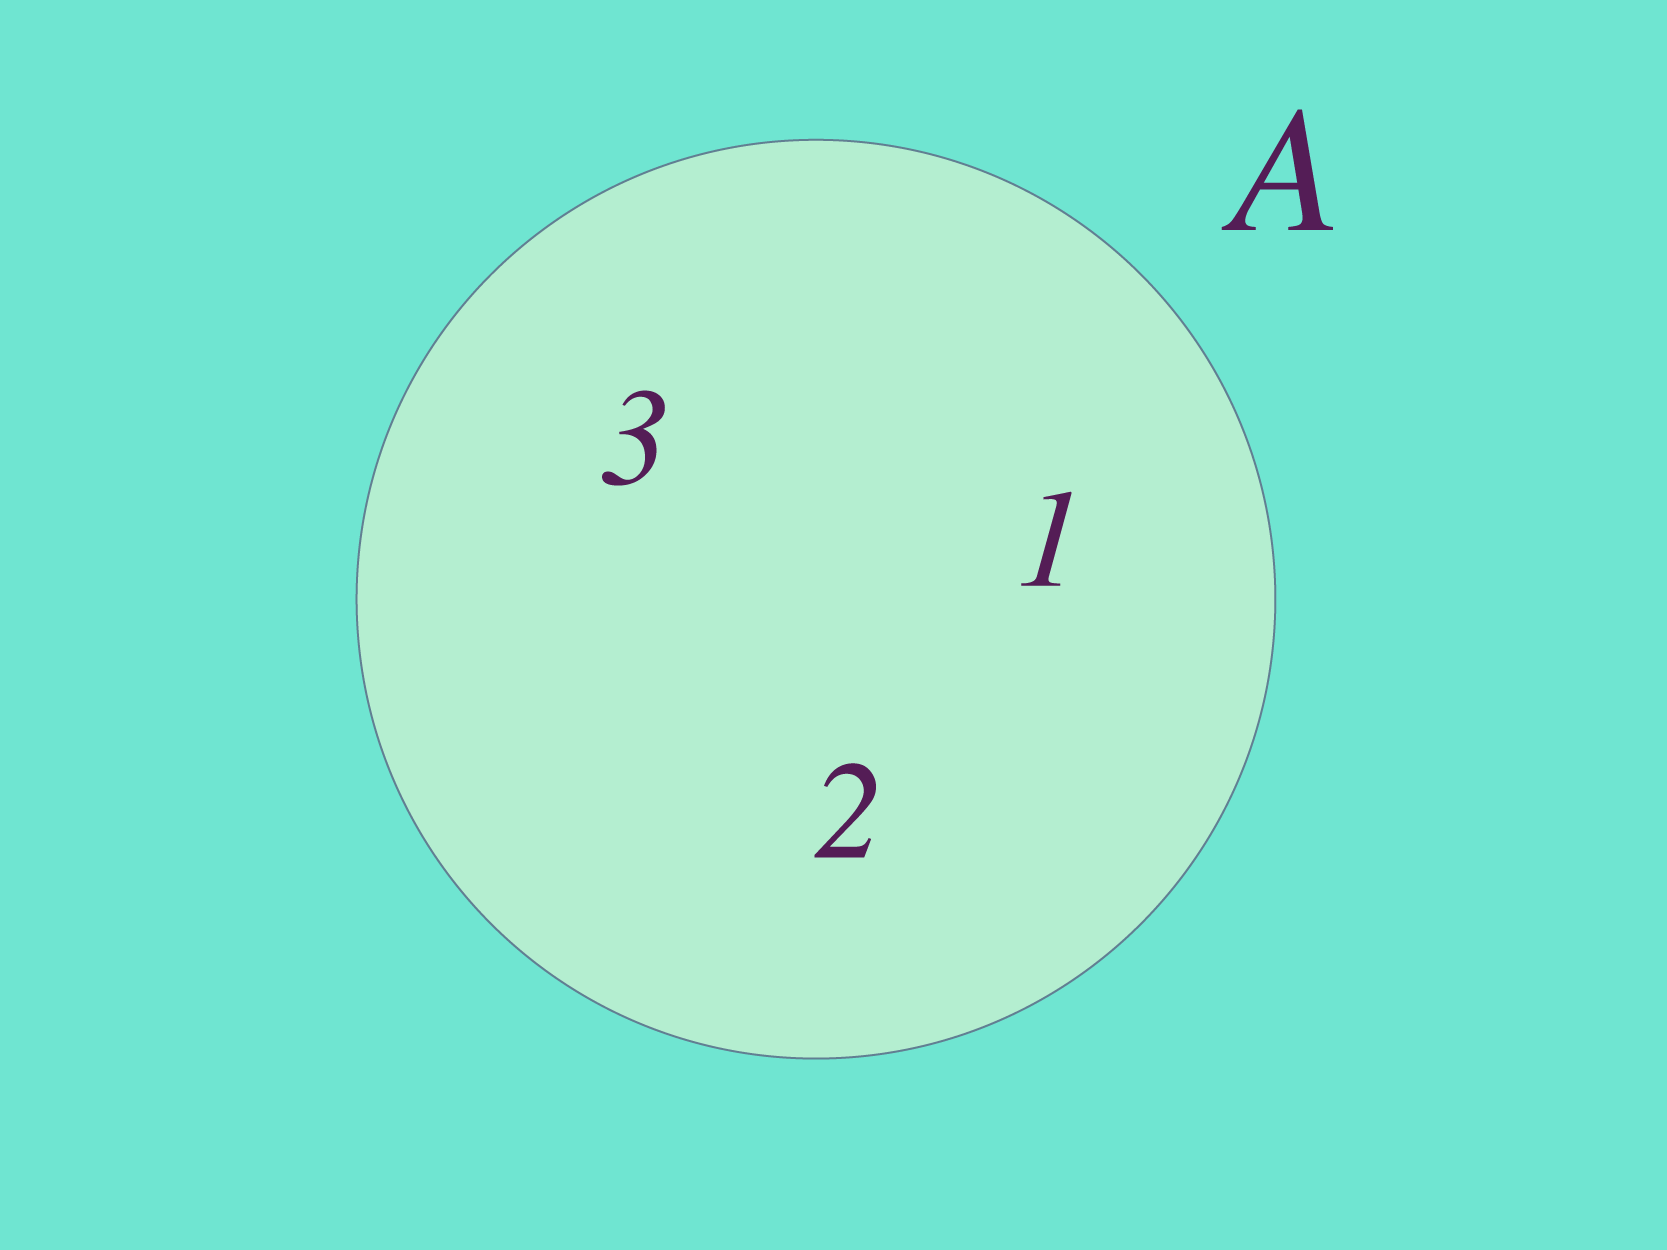 Conjunto A é formado pelos elementos 1, 2, 3.